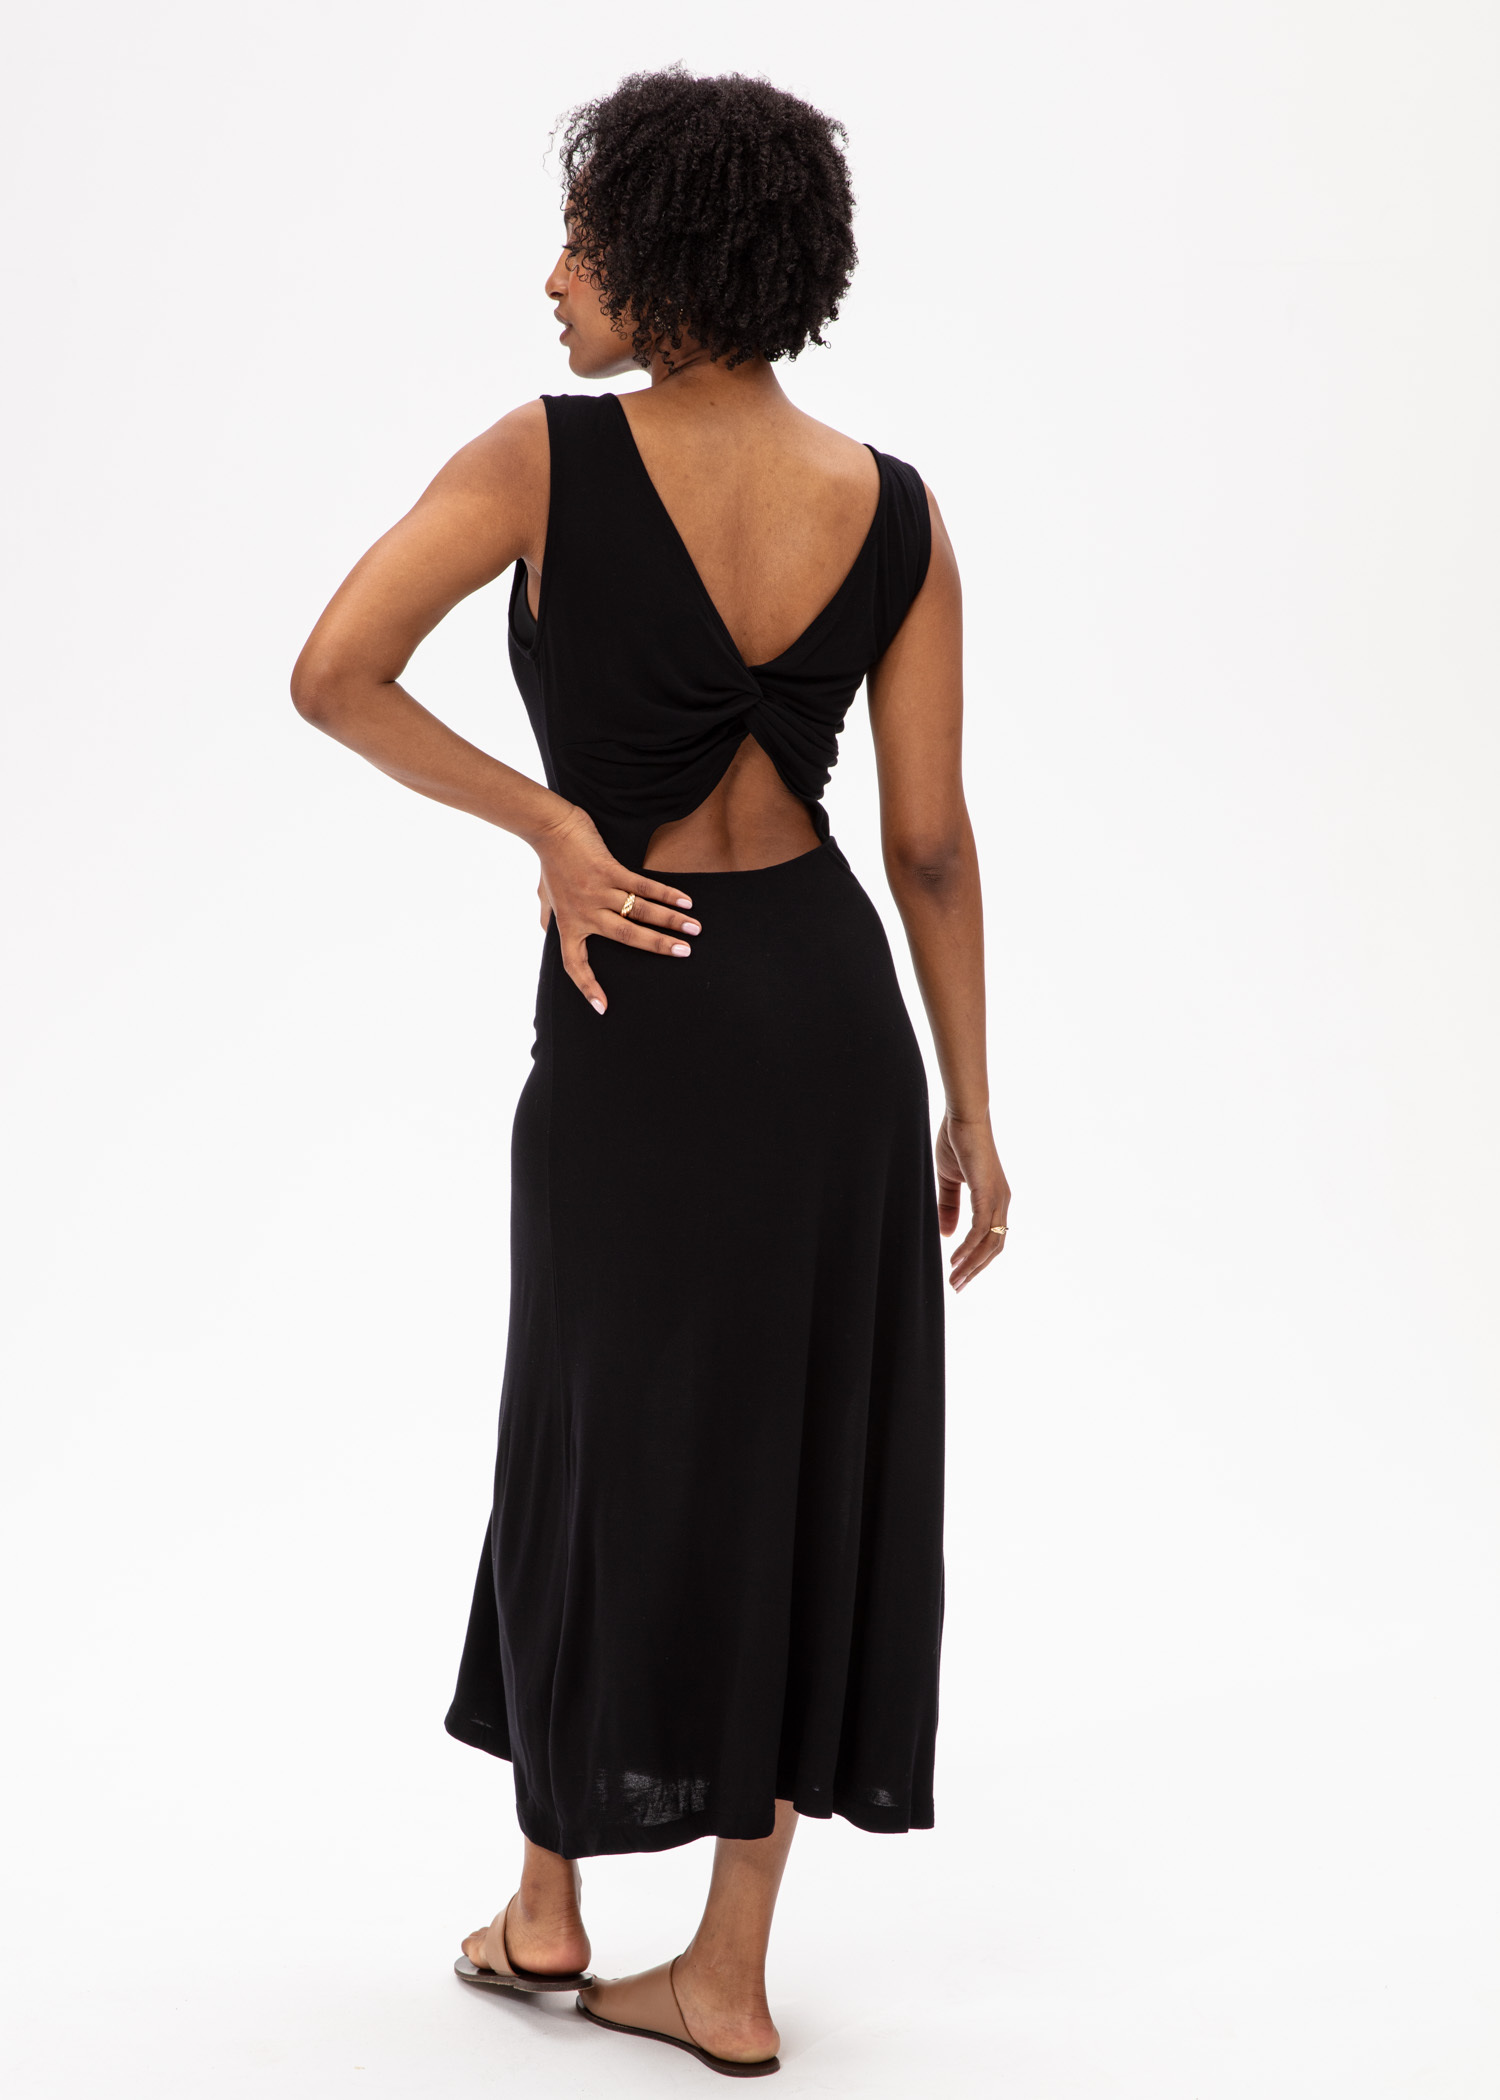 Black sleeveless dress Image 0